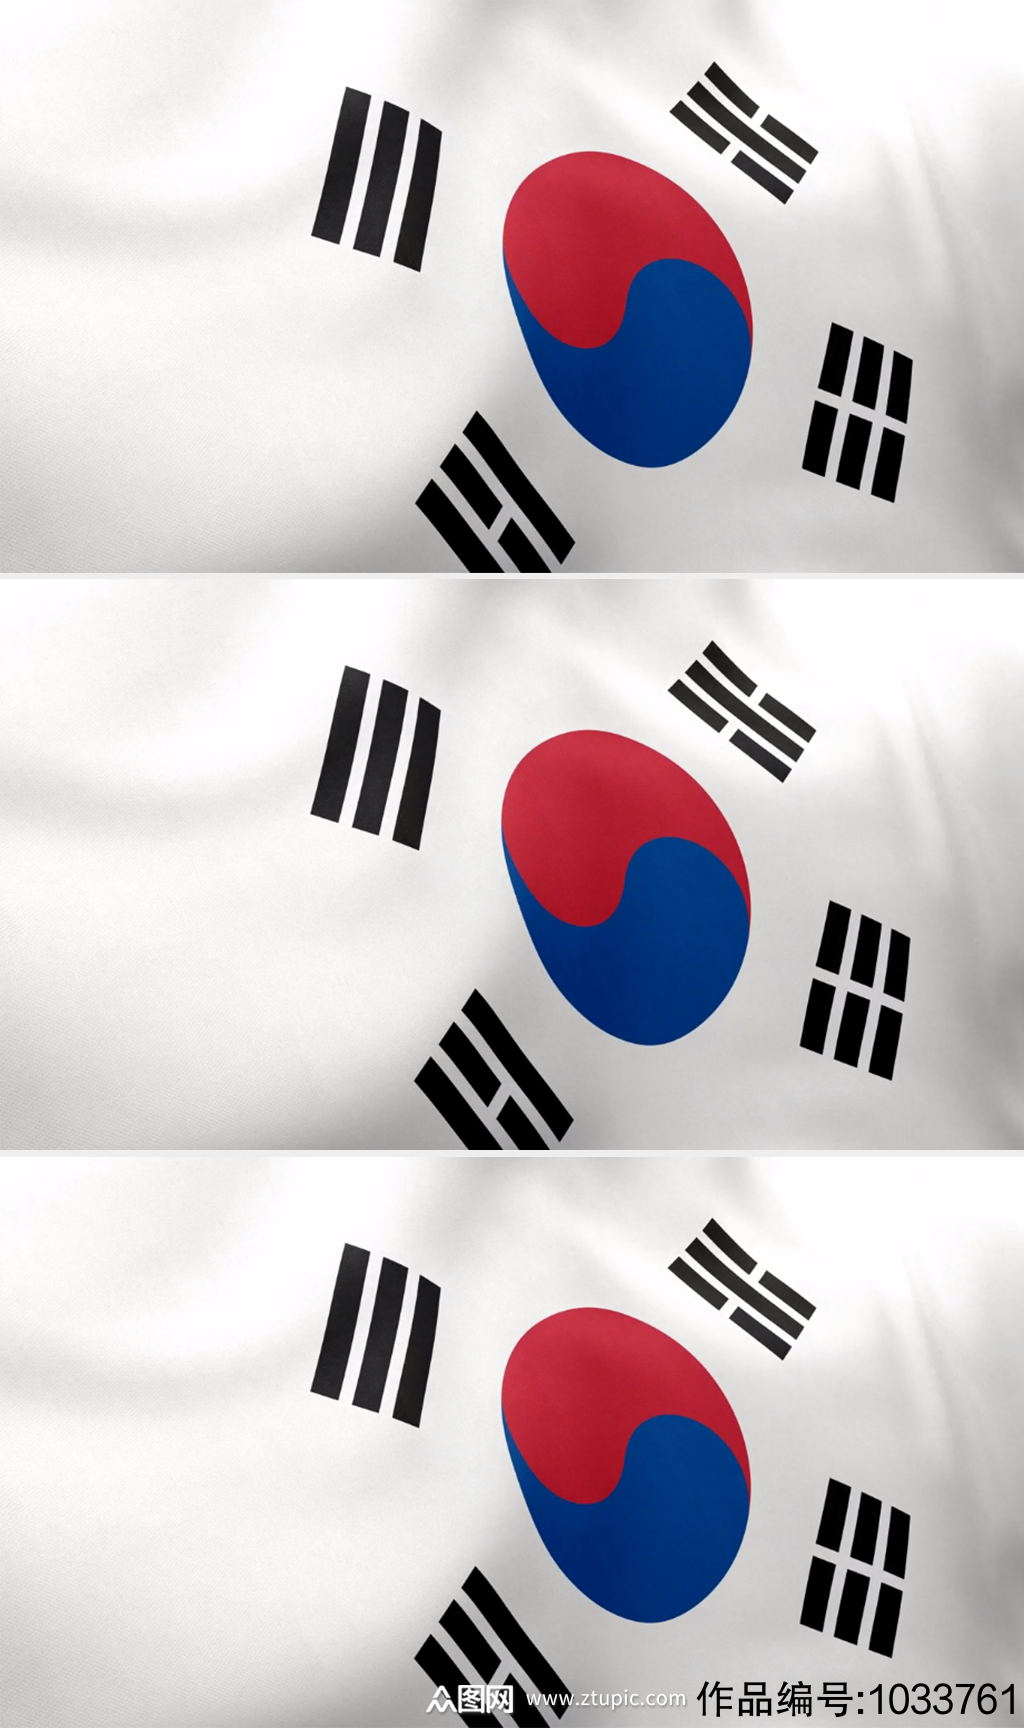 韩国国旗在风中飘扬